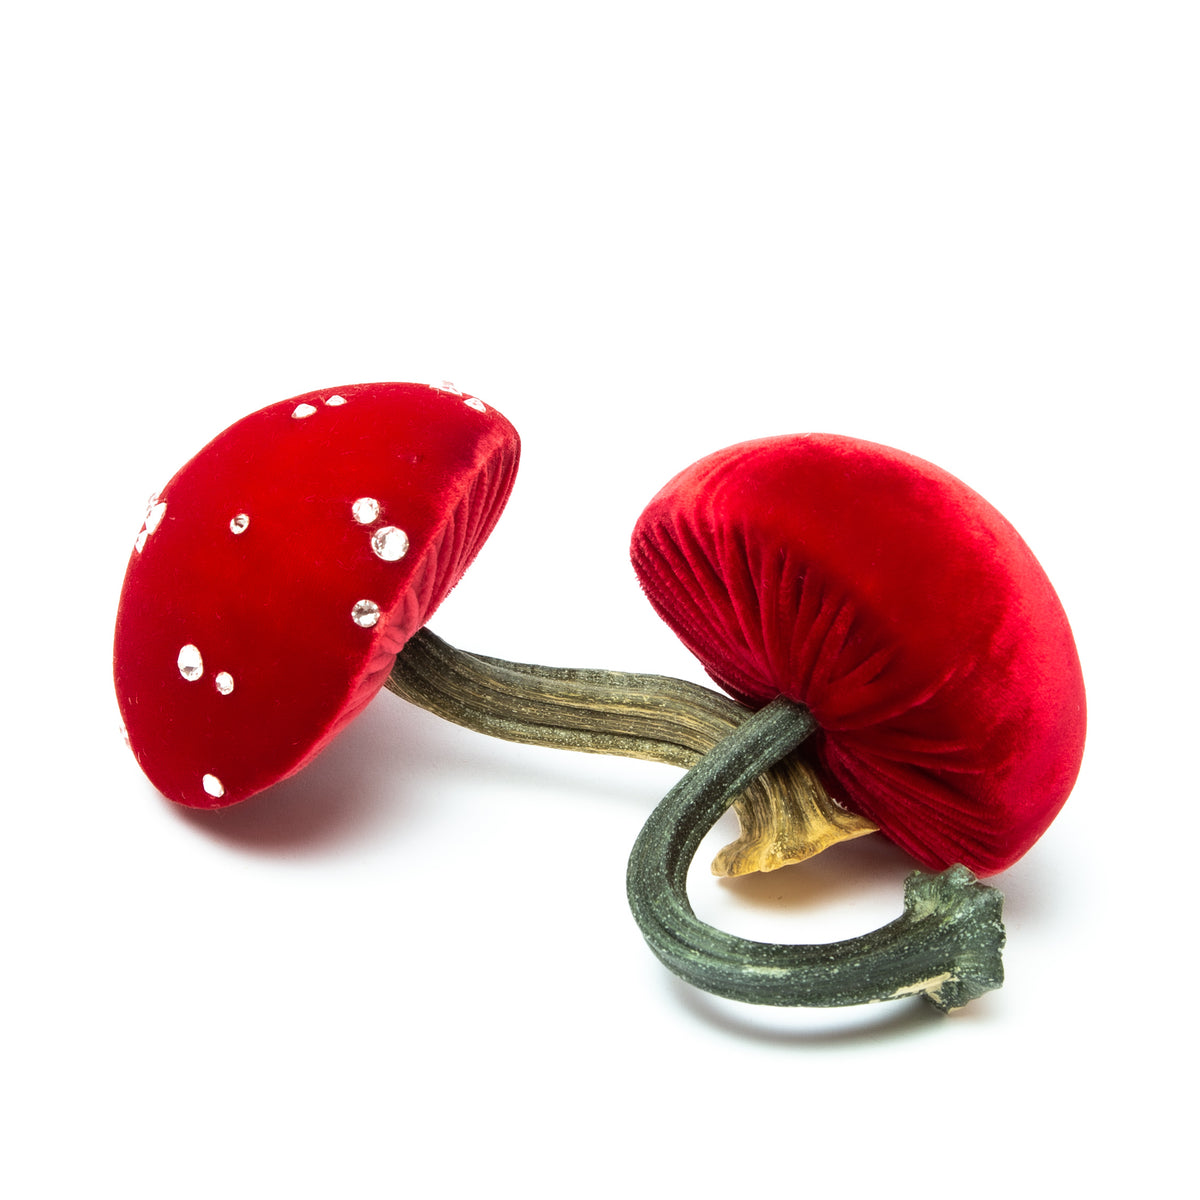 Small poppy Mushrooms